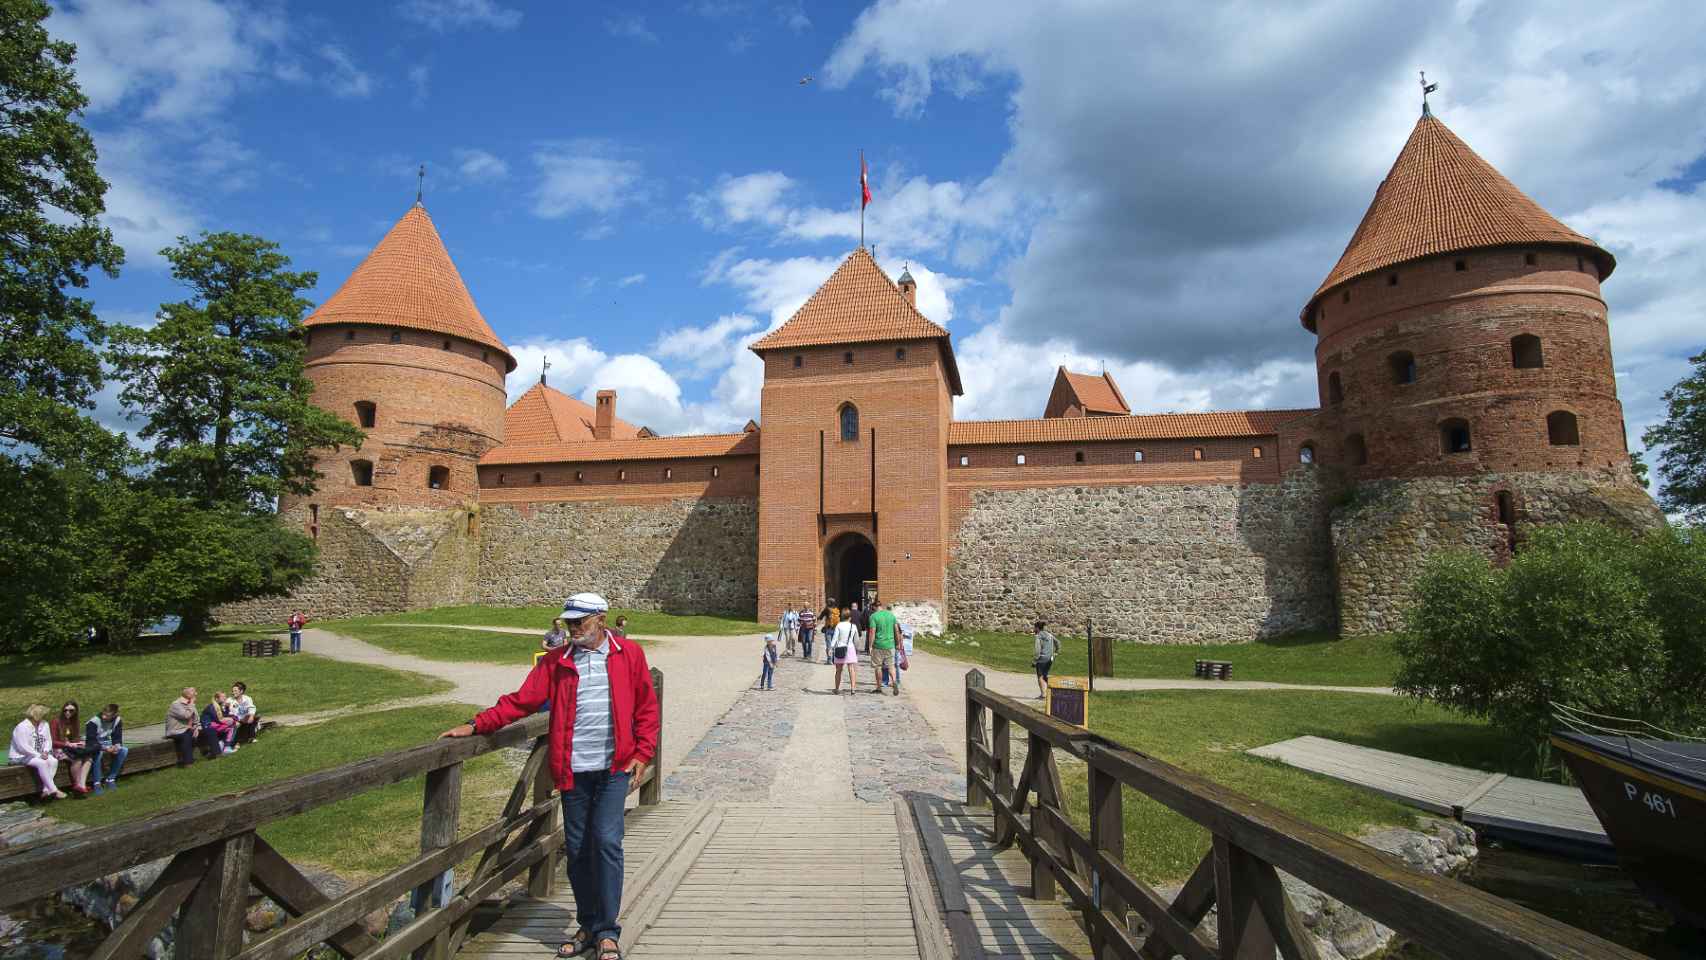 Un castillo gótico de ladrillo rojo sobre una de las islas del lago Galvė.